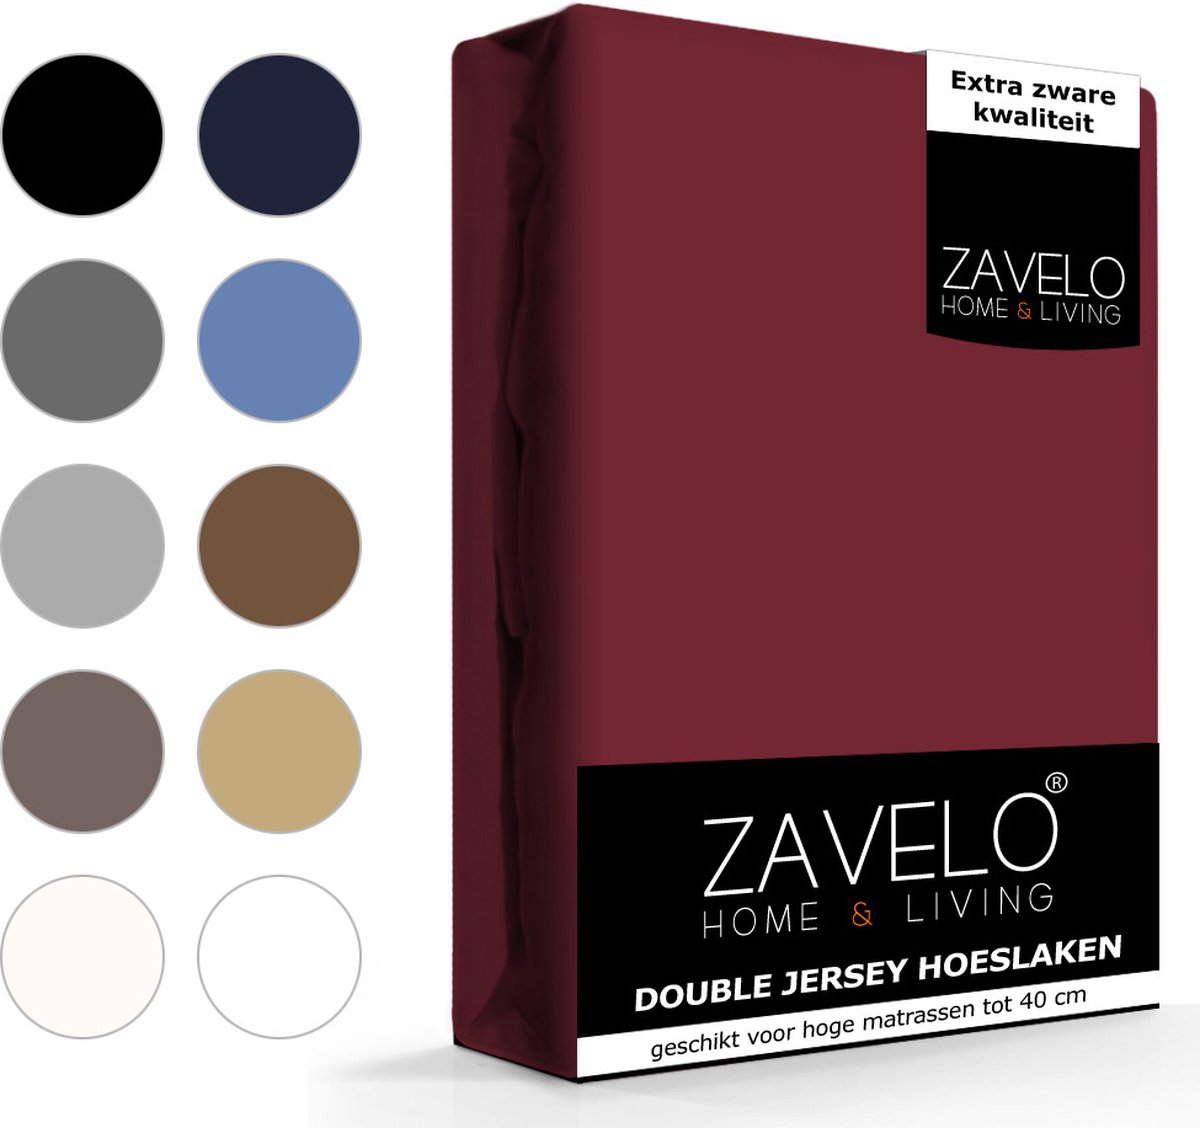 Slaaptextiel Zavelo Double Jersey Hoeslaken Bordeaux-lits-jumeaux (200x220 Cm) - Rood